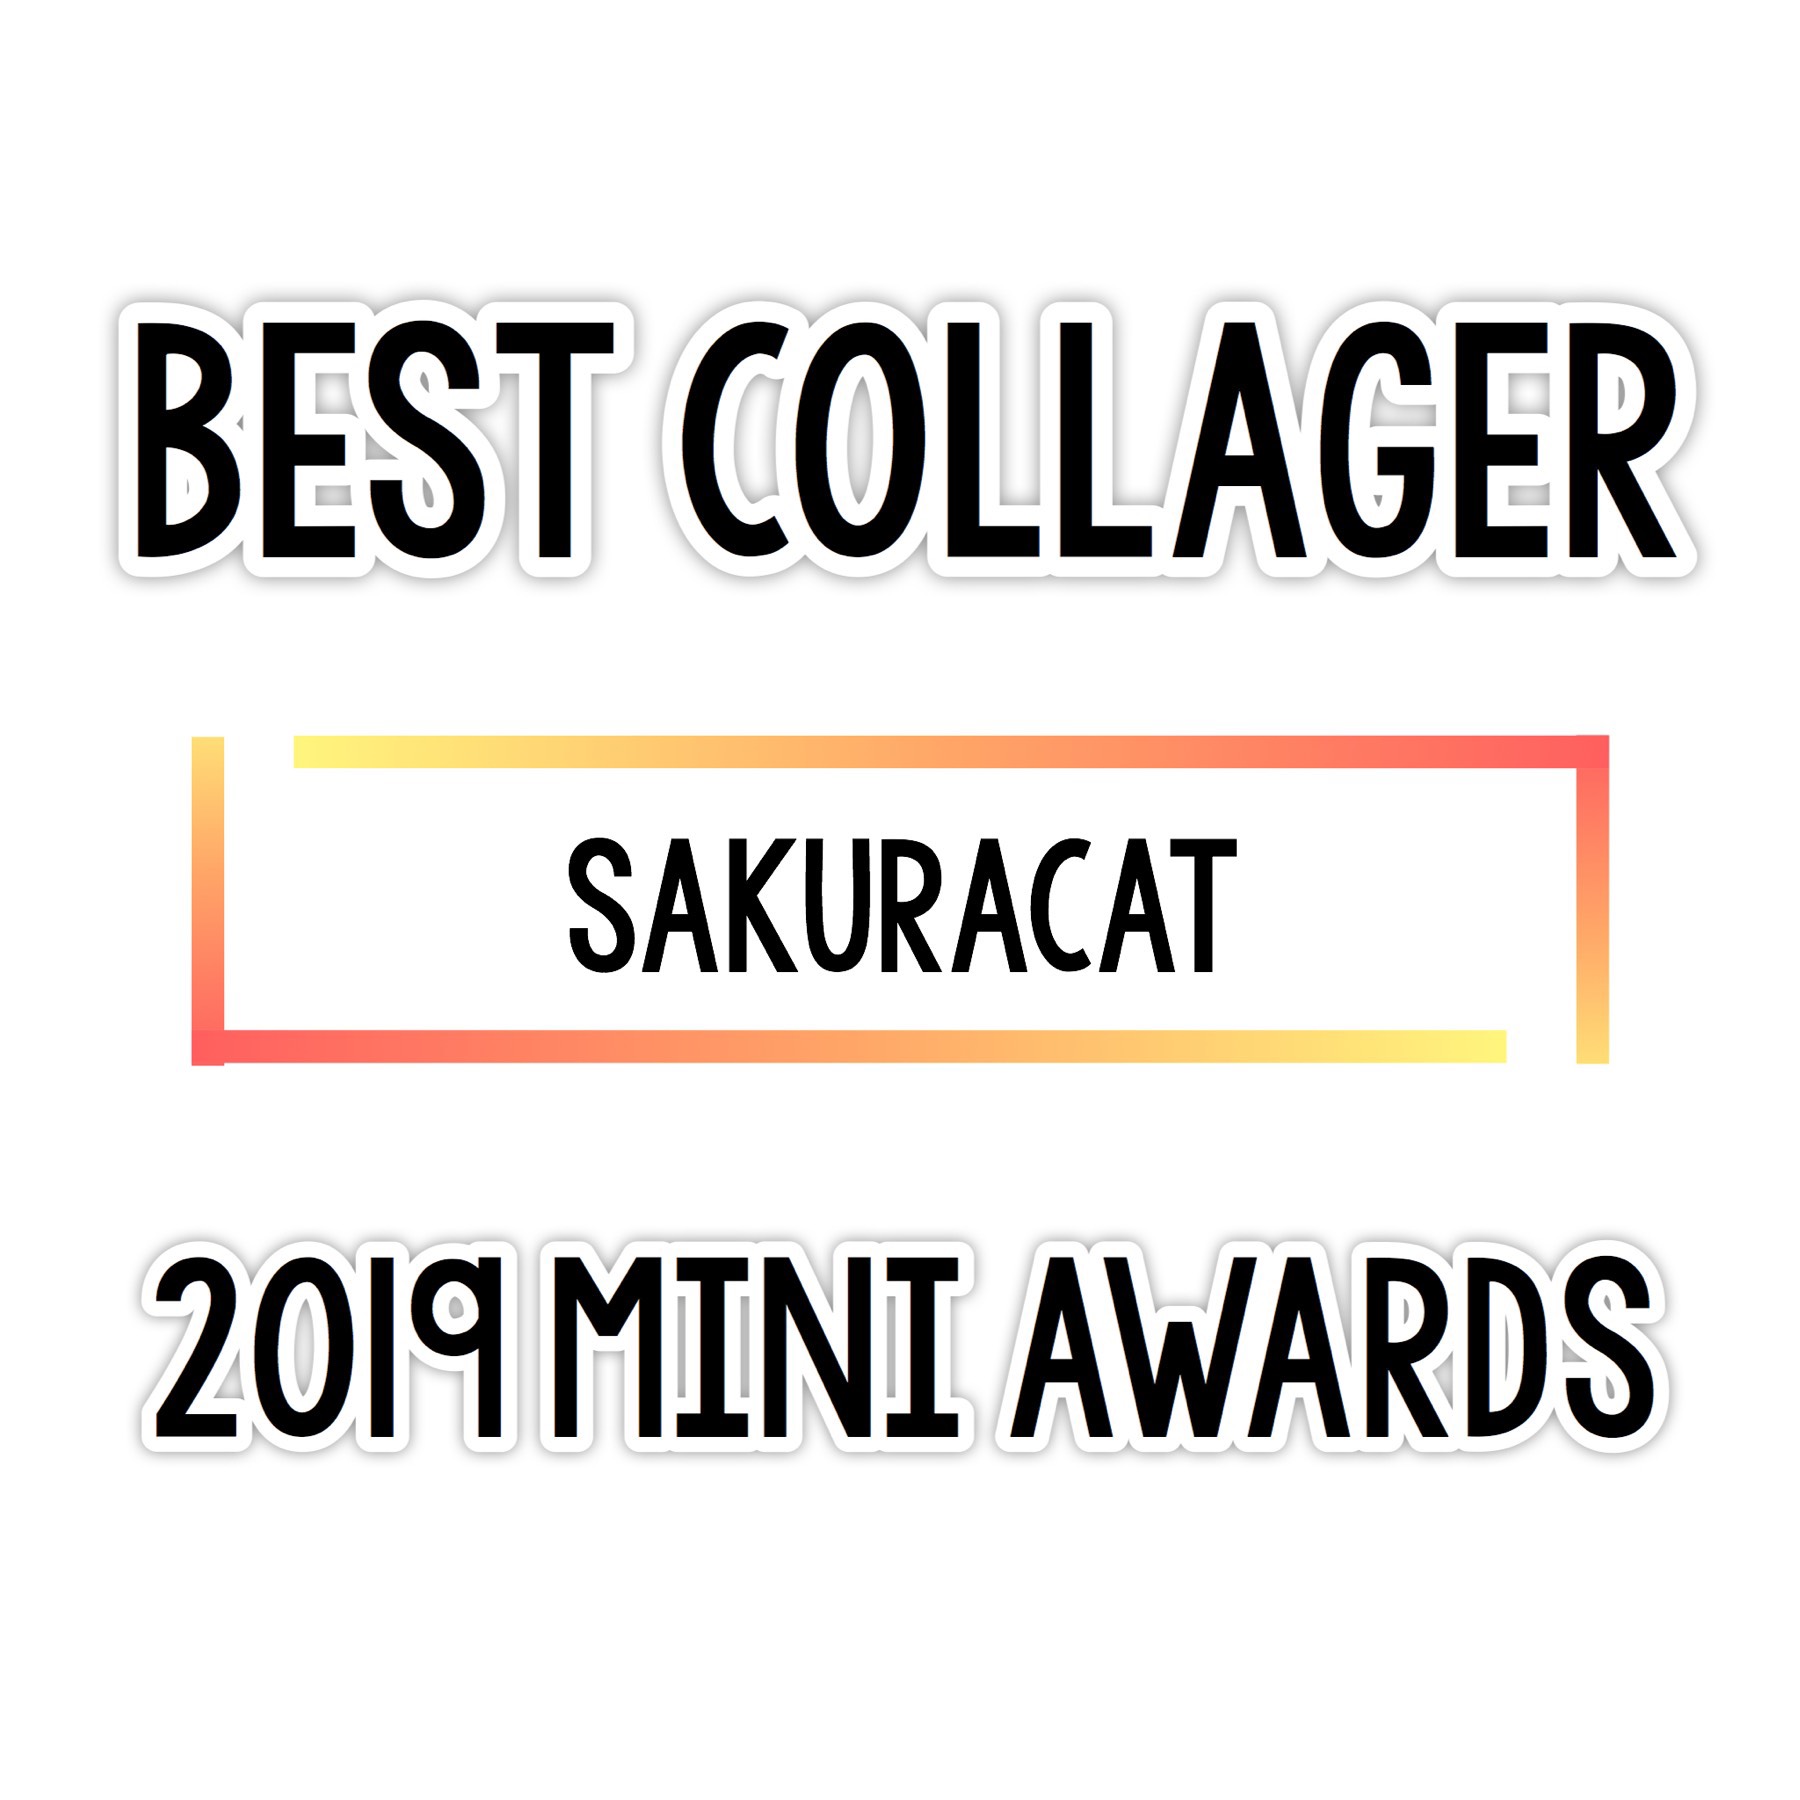 Congratulations sakuracat !